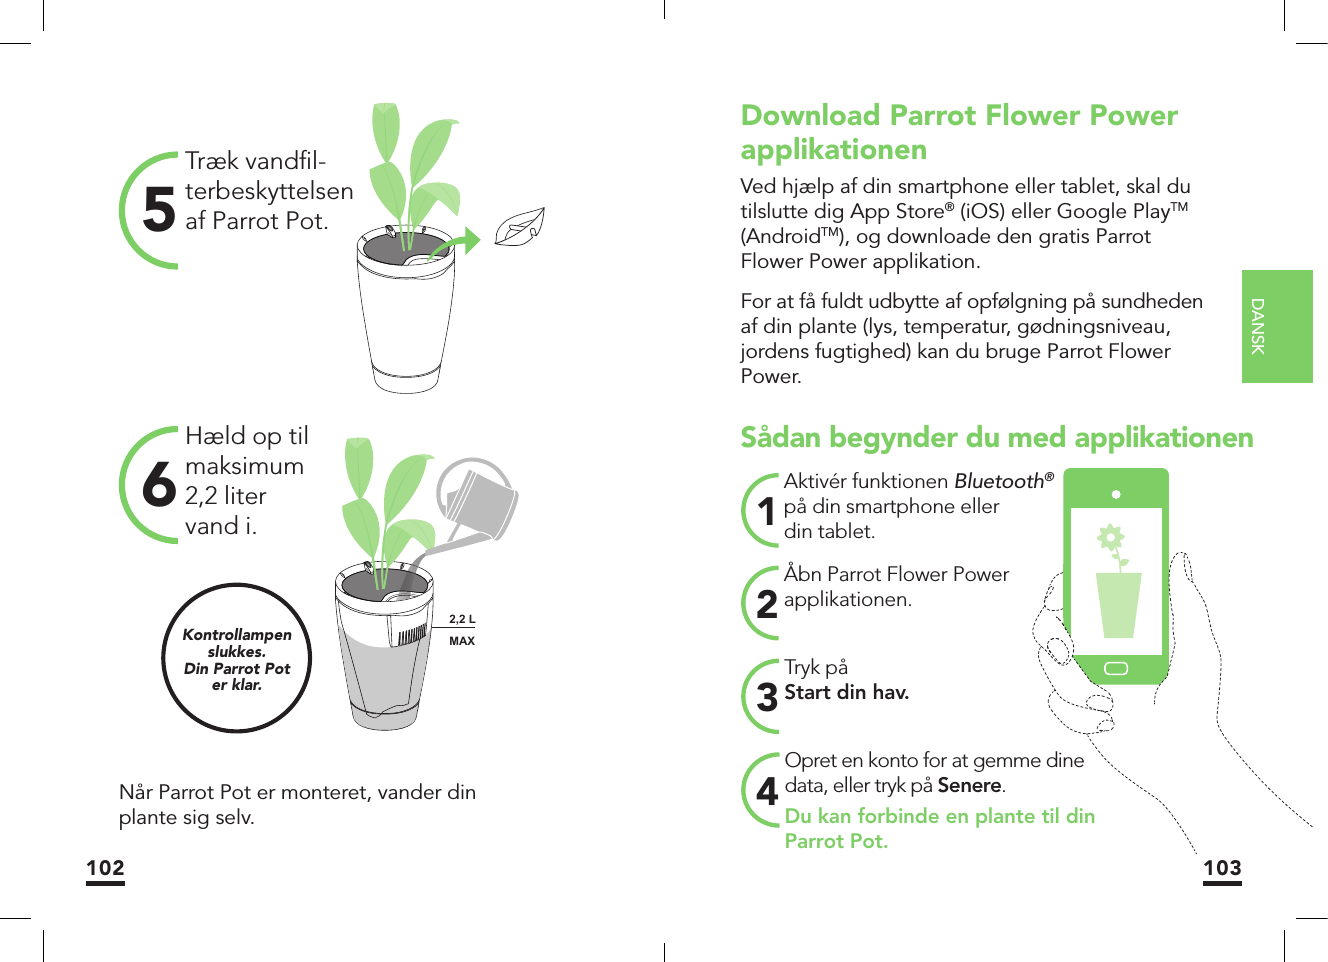 DANSK102 103Træk vandﬁ l-terbeskyttelsen af Parrot Pot.5Hæld op til maksimum 2,2 liter vand i.6Når Parrot Pot er monteret, vander din plante sig selv.Kontrollampen slukkes.Din Parrot Poter klar.MAX2,2 LMAXSådan begynder du med applikationenTryk påStart din hav.3Aktivér funktionen Bluetooth® på din smartphone eller din tablet. 1Åbn Parrot Flower Power applikationen. 2Opret en konto for at gemme dine data, eller tryk på Senere.Du kan forbinde en plante til din Parrot Pot.4Download Parrot Flower Power applikationenVed hjælp af din smartphone eller tablet, skal du tilslutte dig App Store® (iOS) eller Google PlayTM (AndroidTM), og downloade den gratis Parrot Flower Power applikation.For at få fuldt udbytte af opfølgning på sundheden af din plante (lys, temperatur, gødningsniveau, jordens fugtighed) kan du bruge Parrot Flower Power.MAX